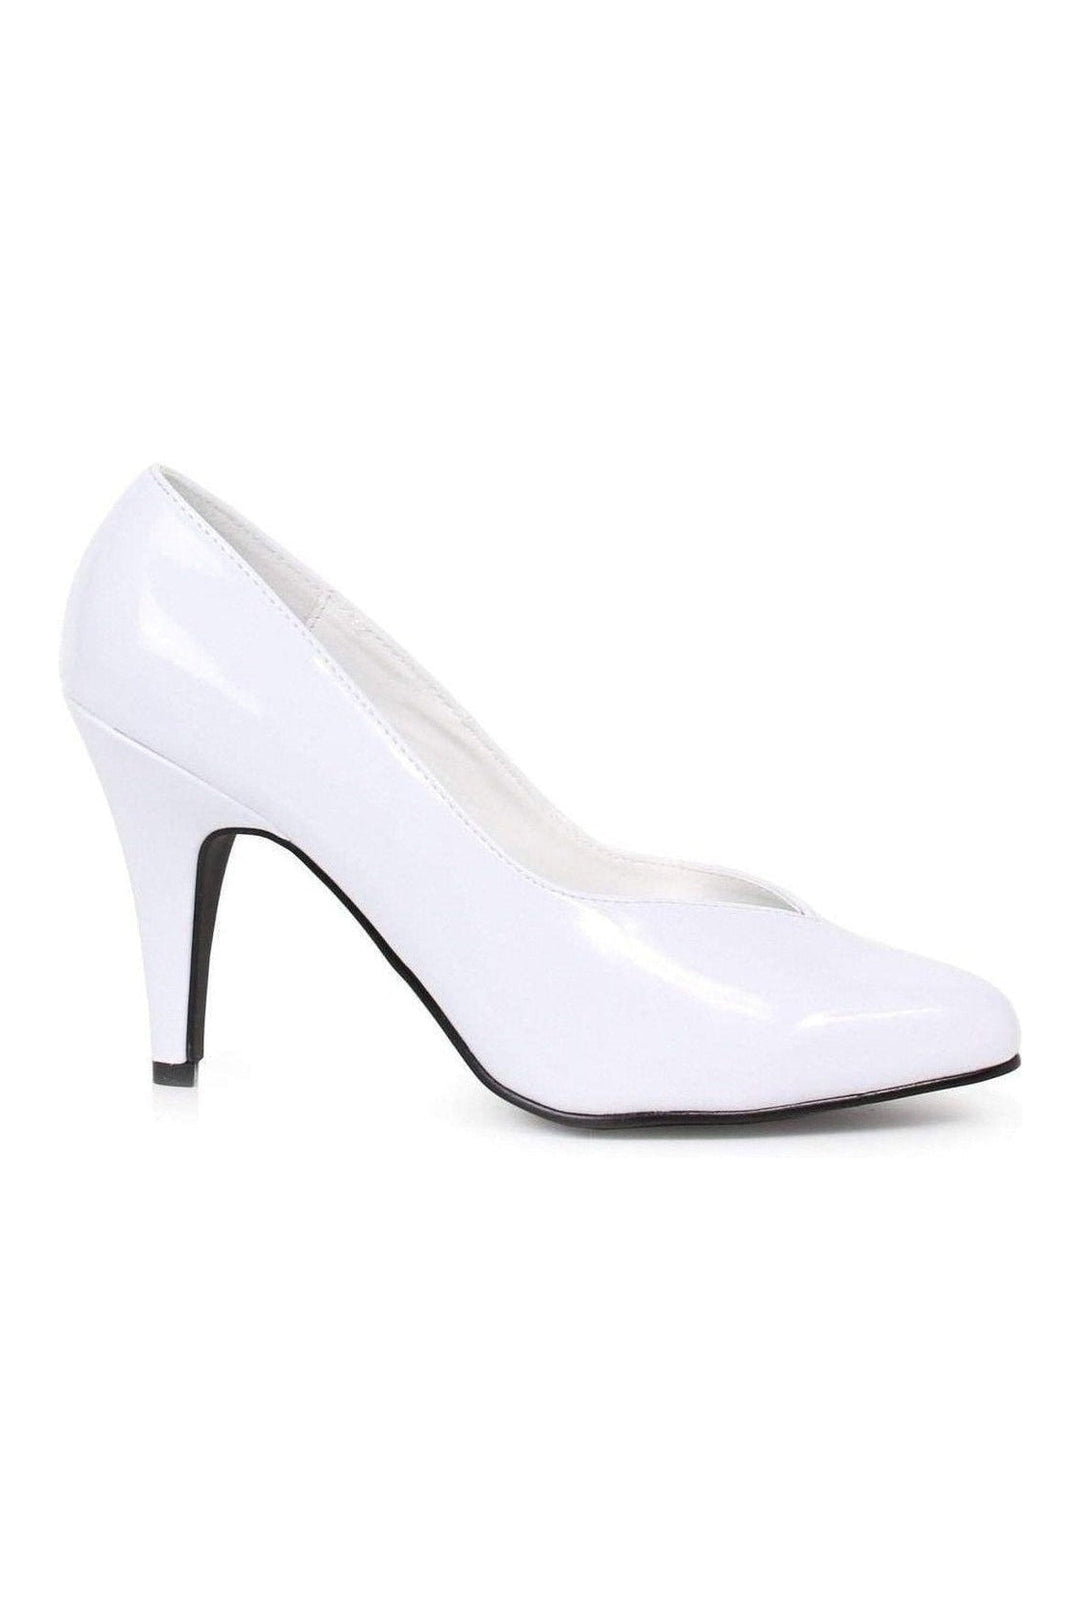 8240-D Pump | White Patent-Ellie Shoes-SEXYSHOES.COM